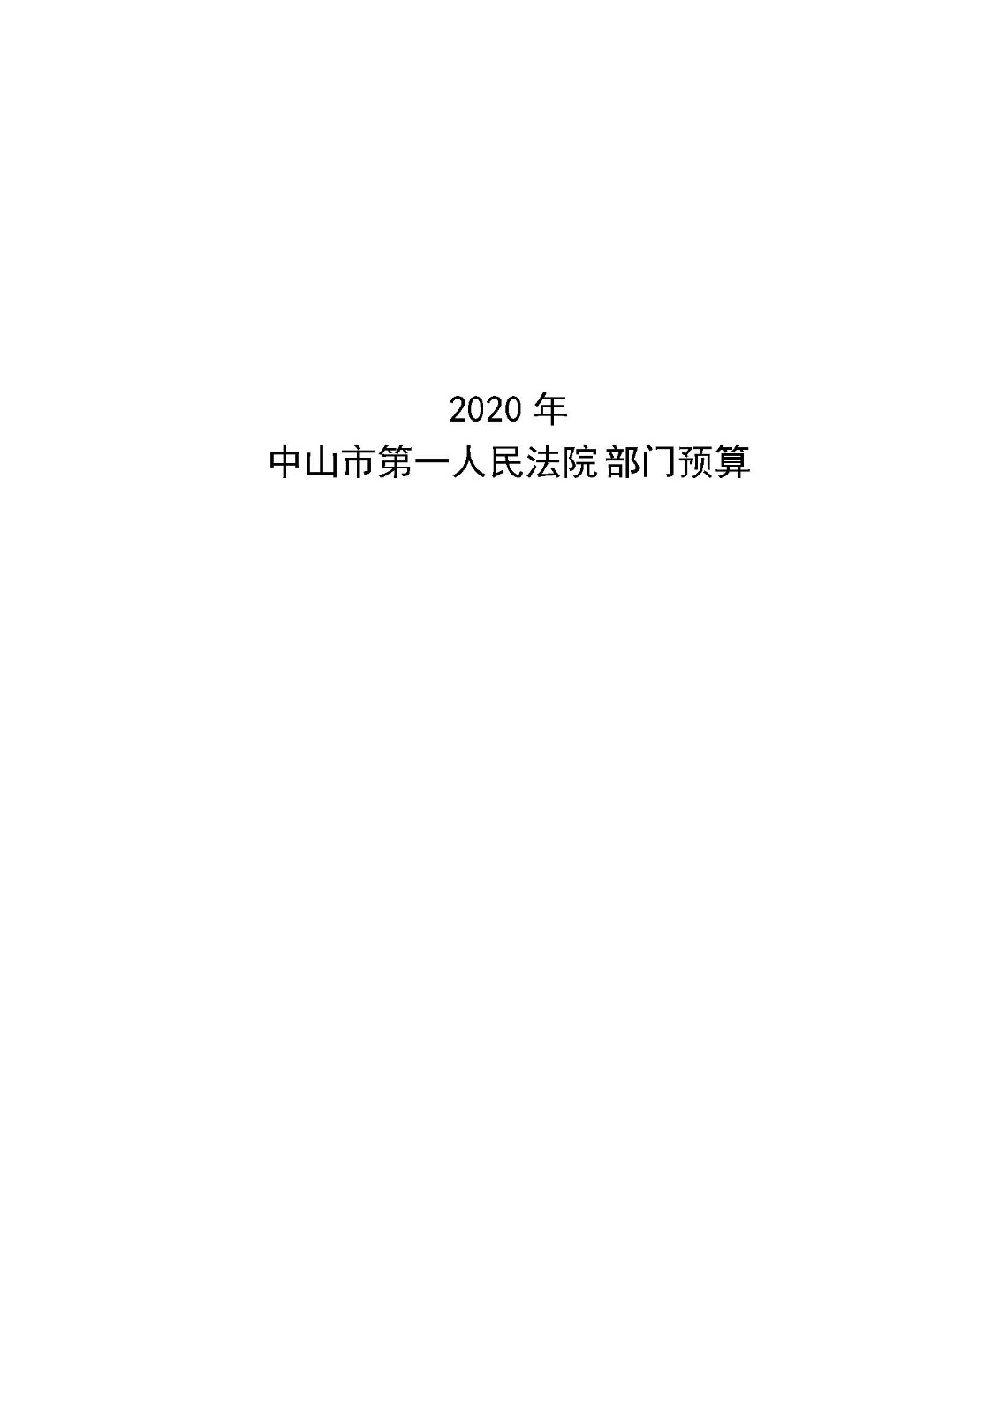 2020年中山市第一人民法院部门预算_页面_01.jpg